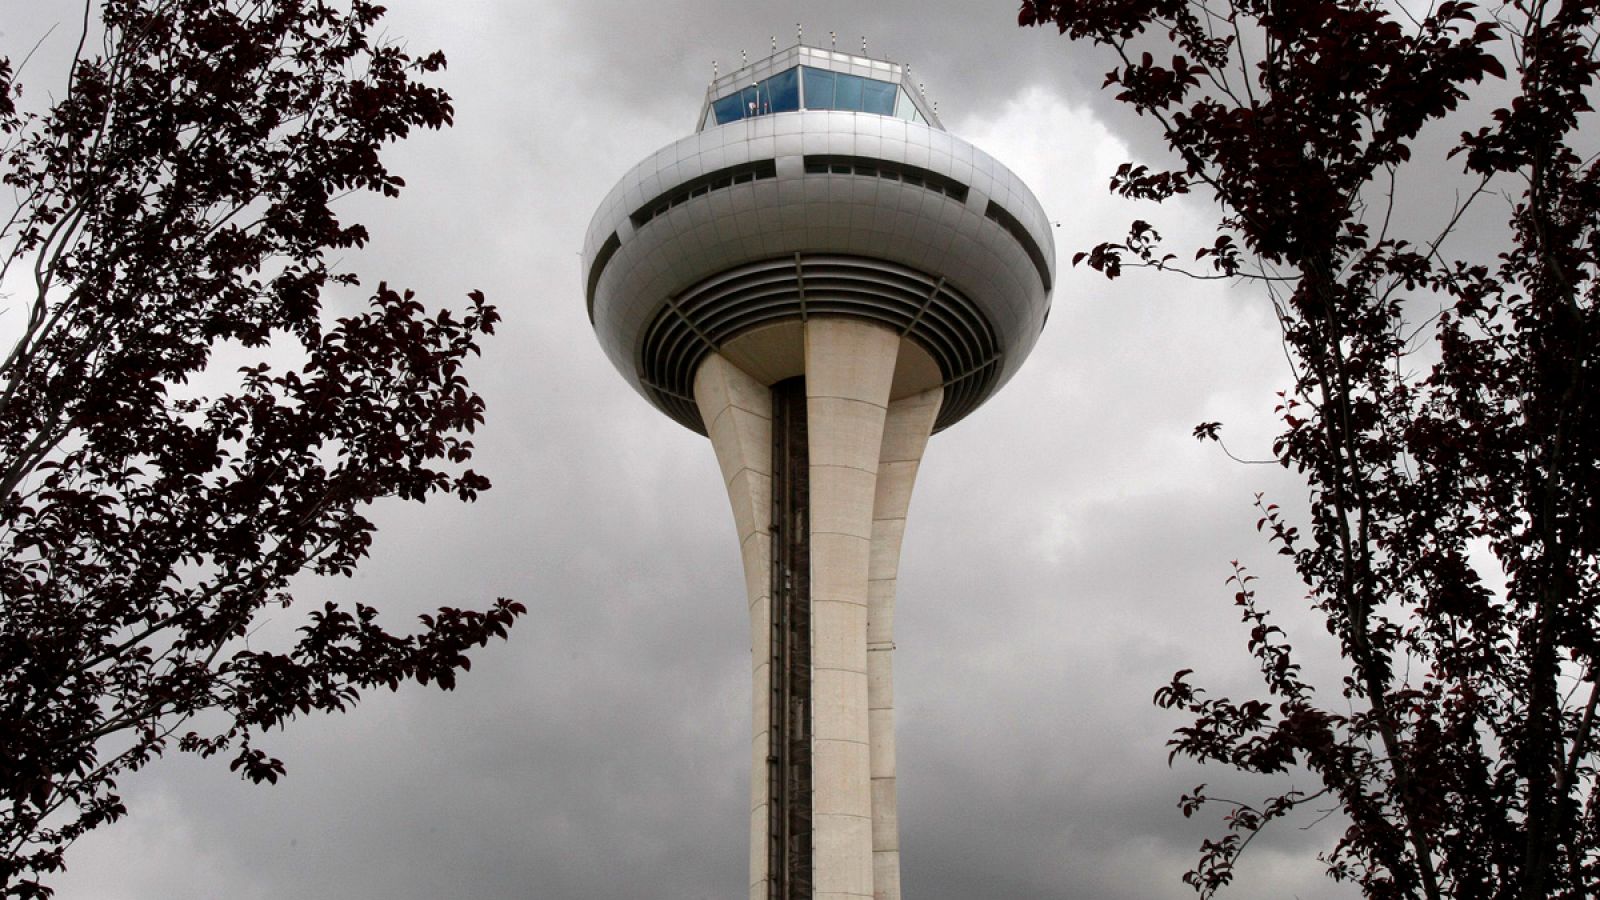 Torre de control del aeropuerto Adolfo Suárez Madrid-Barajas